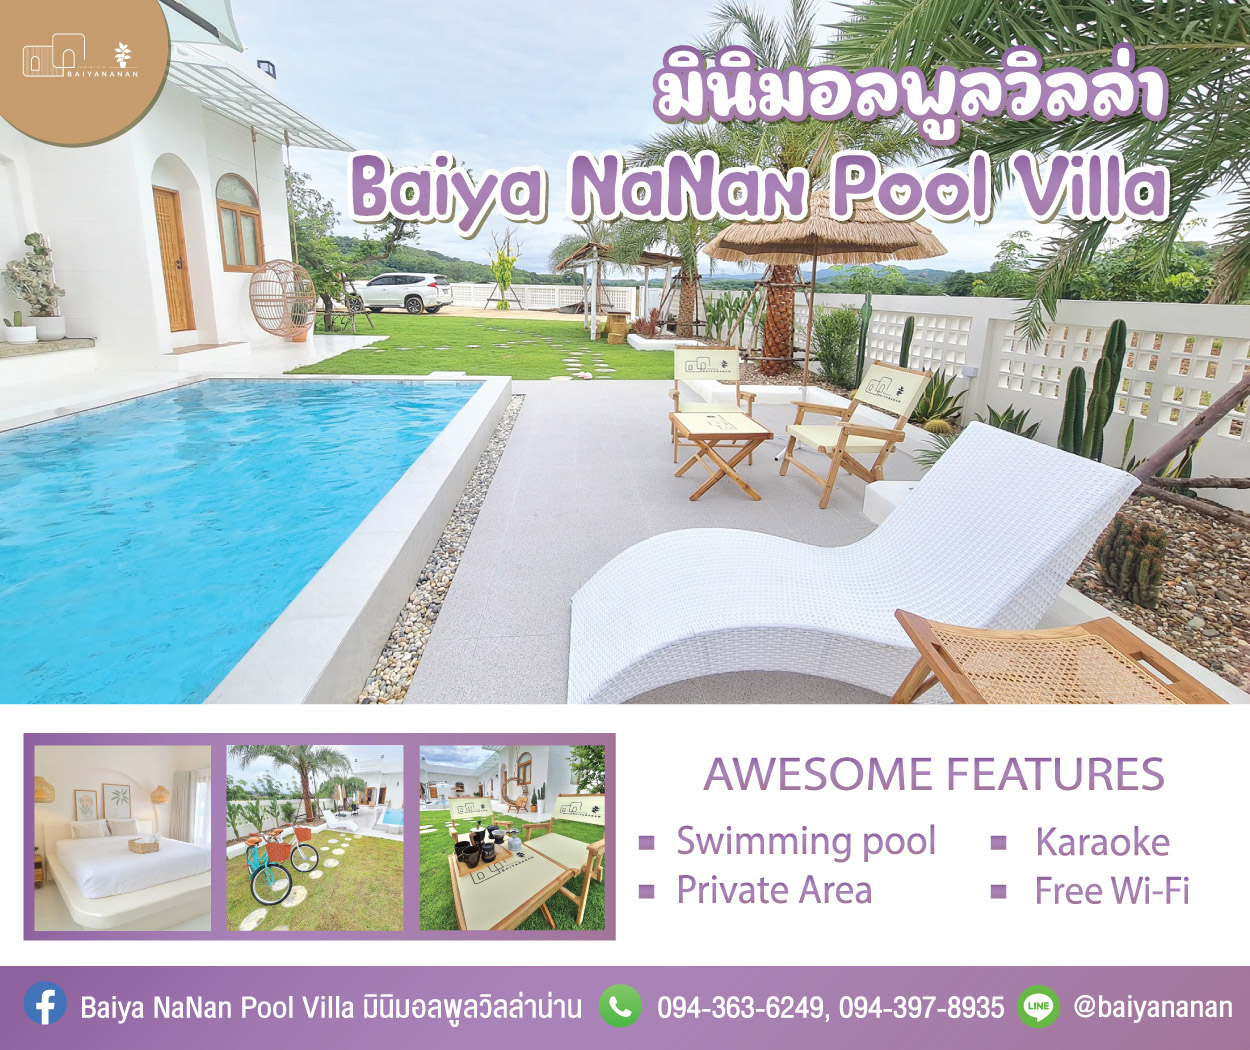 Baiya NaNan Pool Villa มินิมอลพูลวิลล่าน่าน (ใบยานาน่าน)